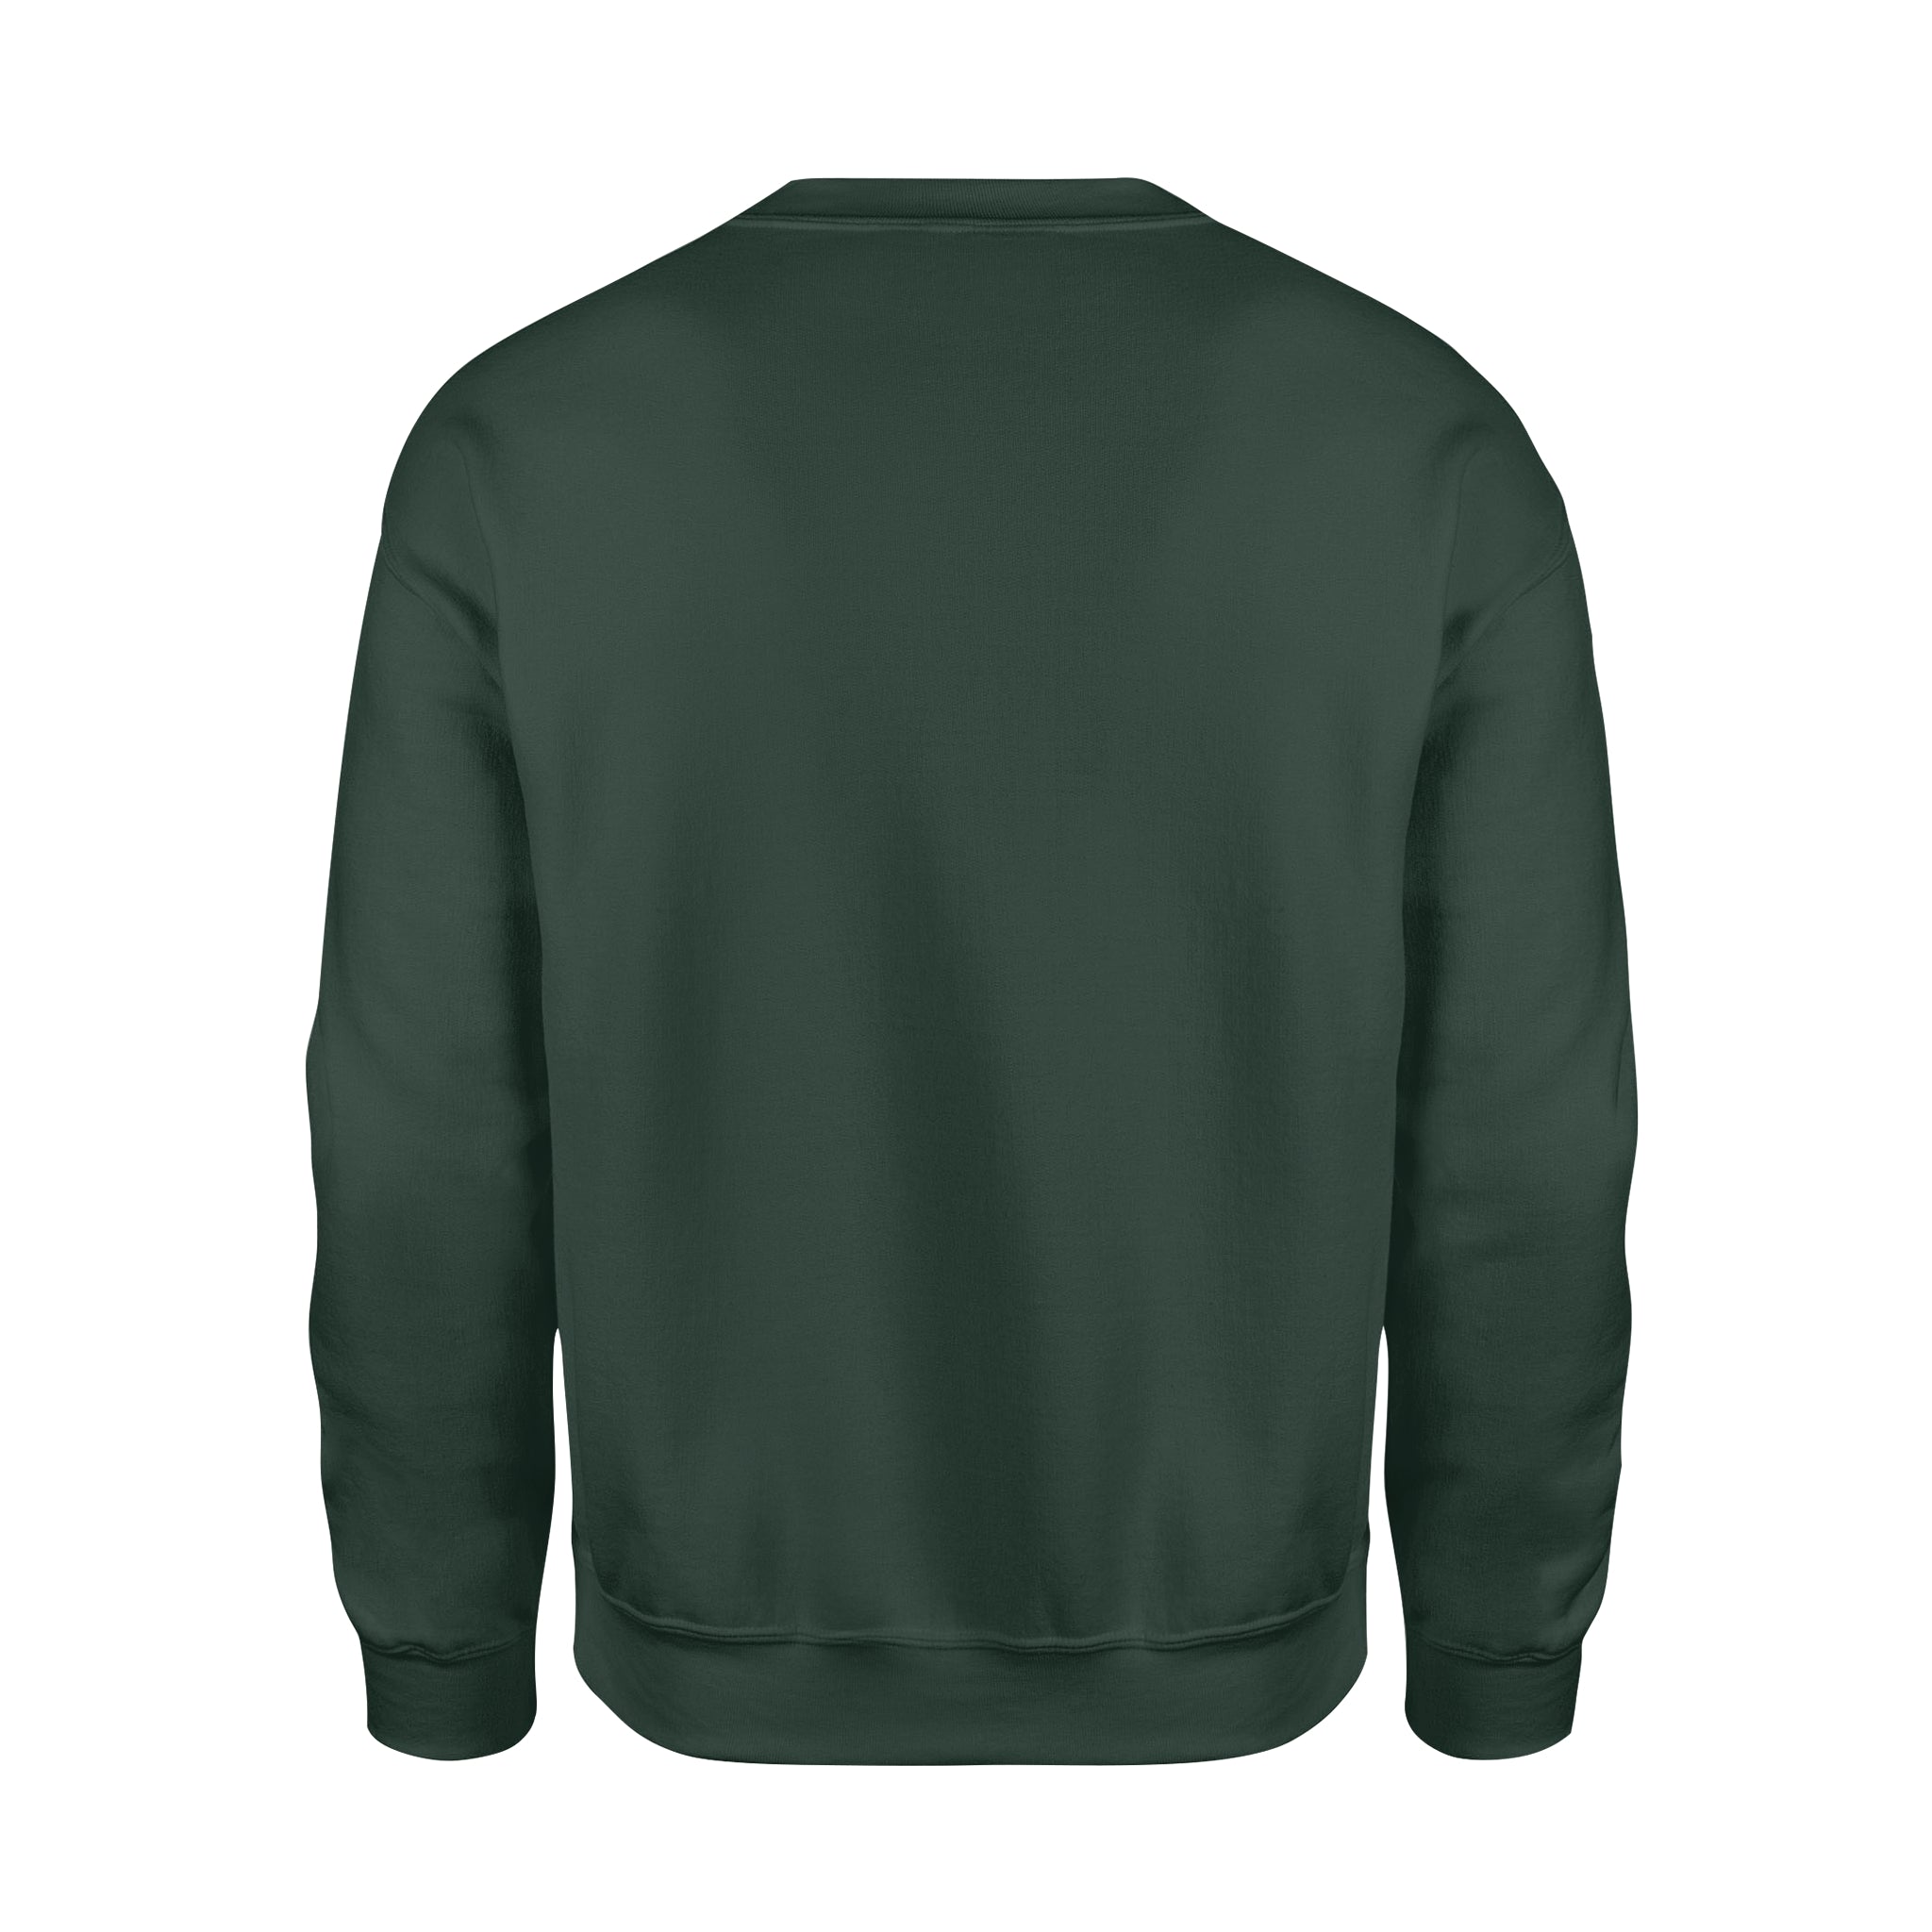 Don't Wait For An Oppoptunity Create It - Fleece Sweatshirt